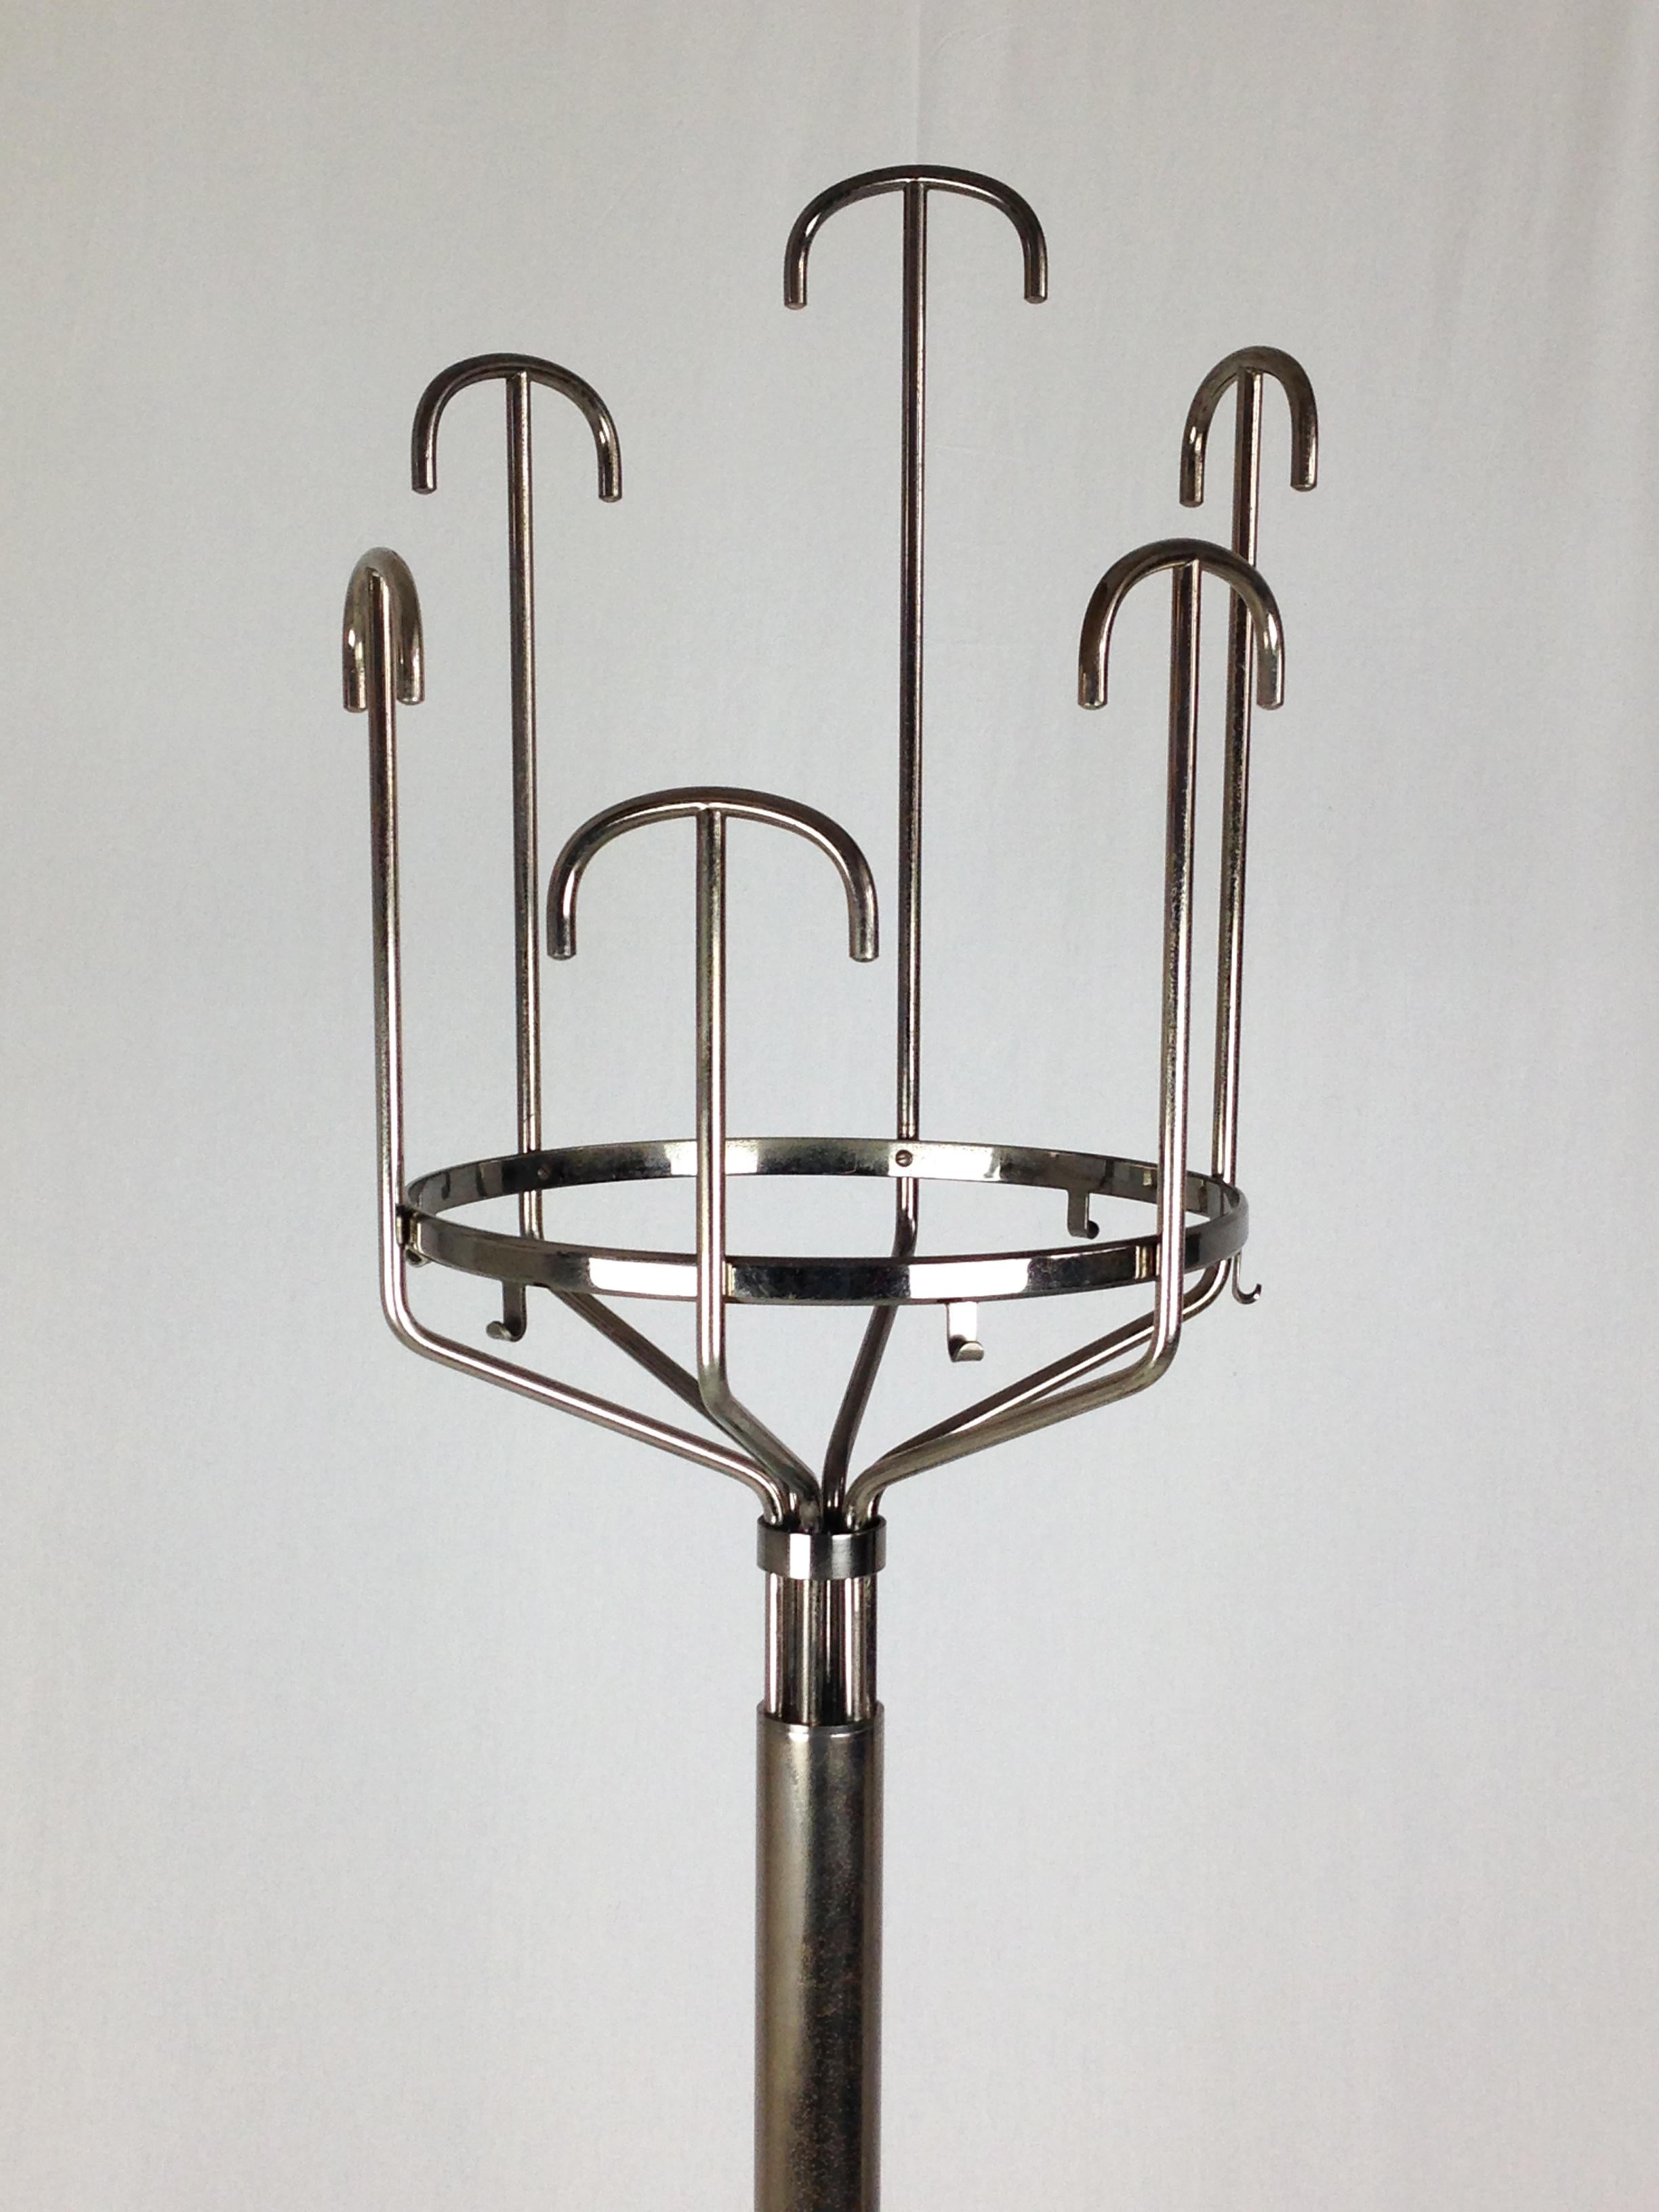 Italian Nickel-Plated Brass 1970s Floor Coat Hanger Melpomene by BBPR for Artemide For Sale